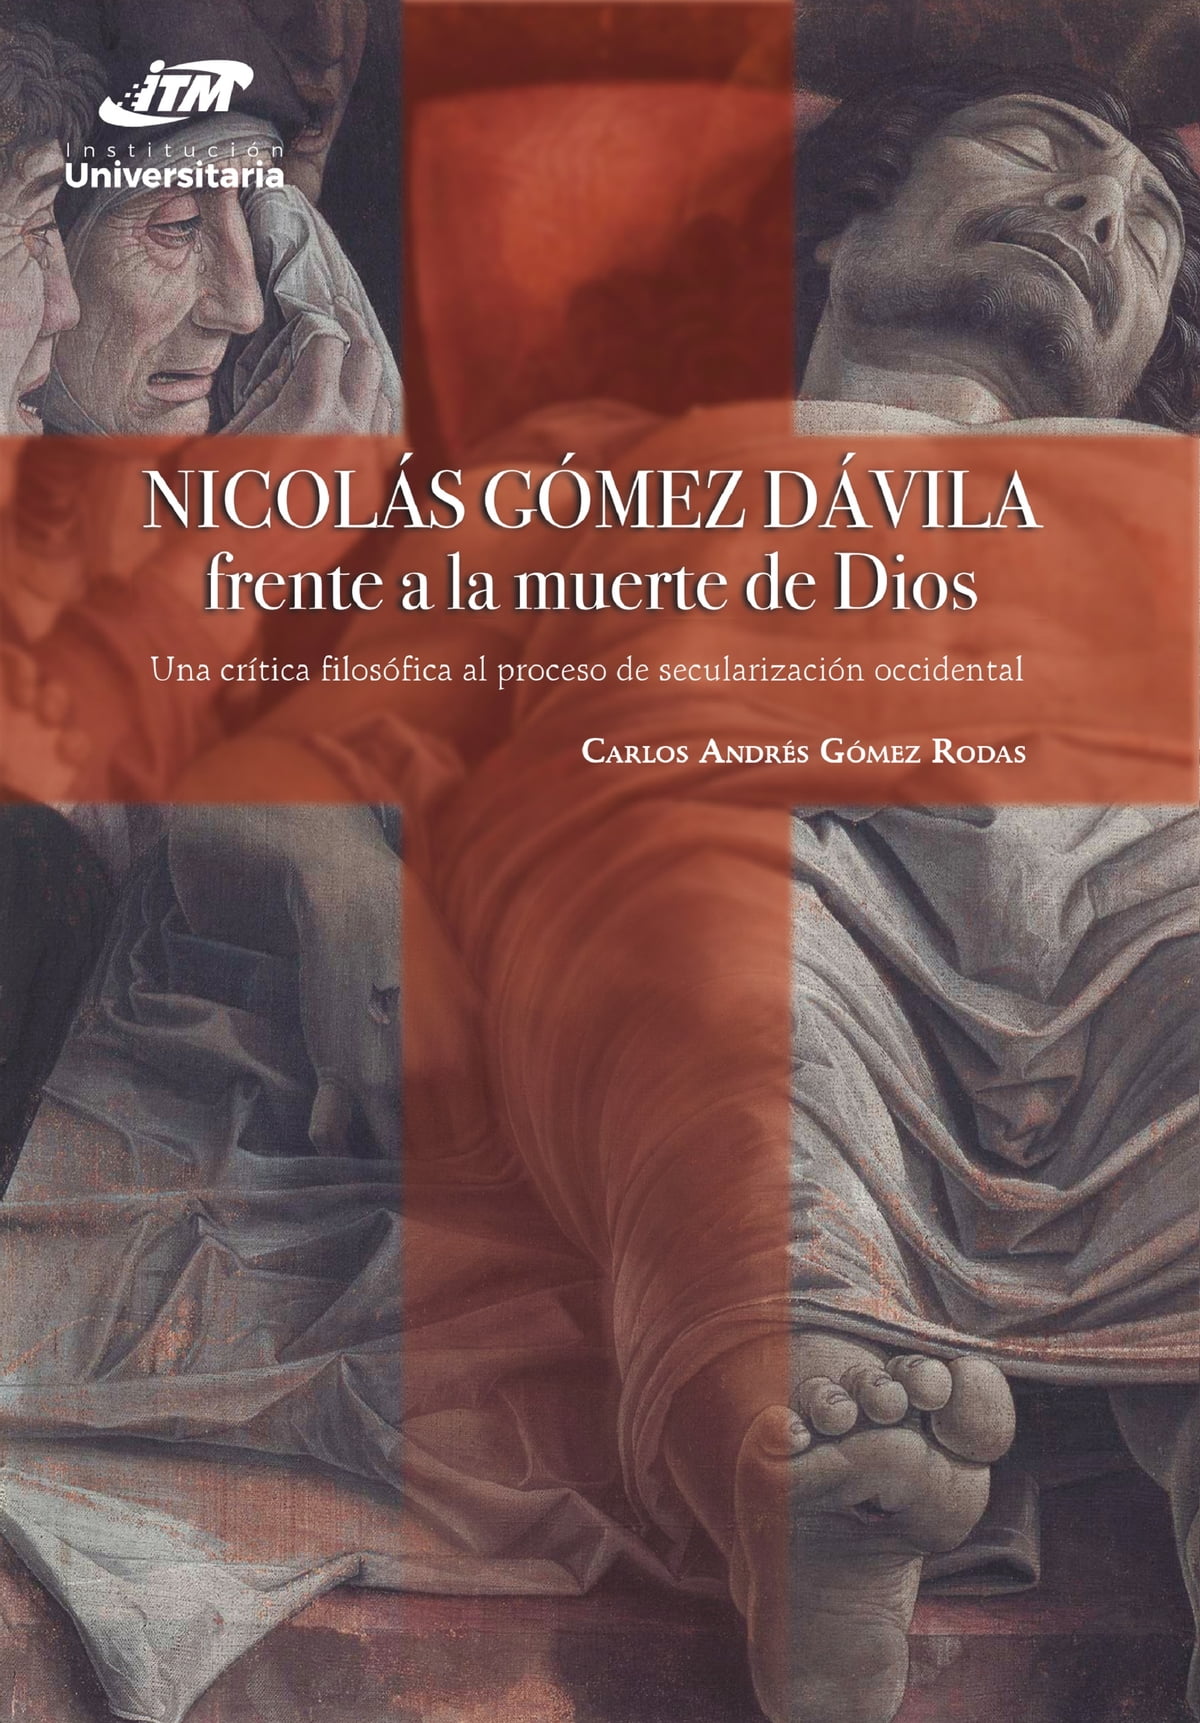 Nicolás Gómez Dávila frente a la muerte de Dios, de Carlos Andrés Gómez Rodas